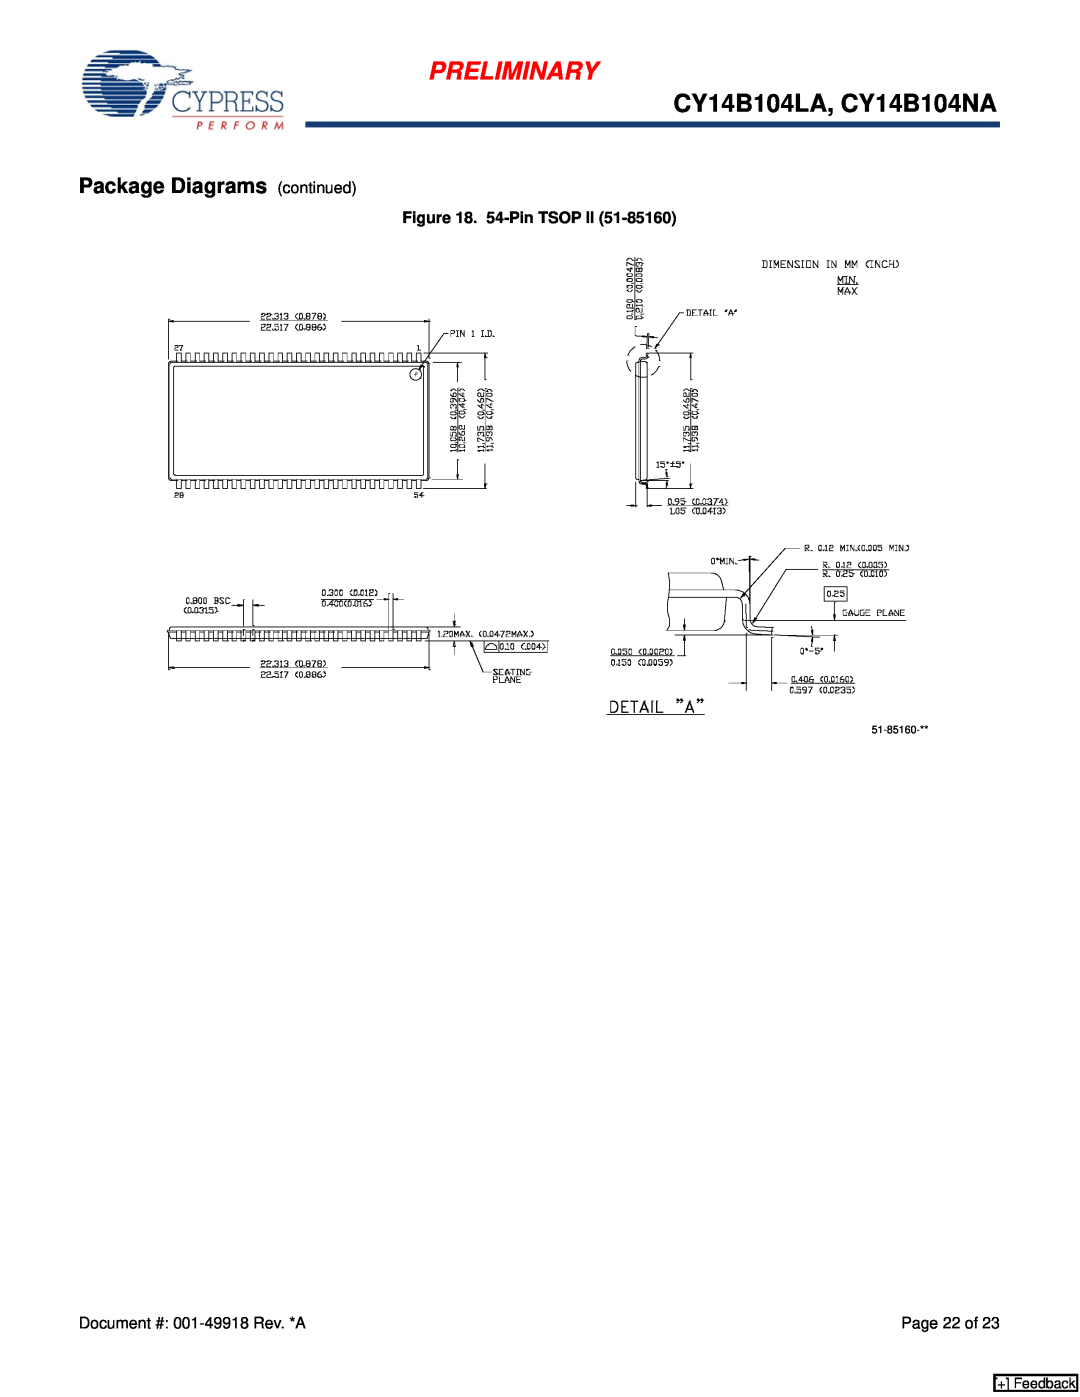 Cypress manual Preliminary, CY14B104LA, CY14B104NA, Package Diagrams continued, 54-Pin TSOP, Page 22 of, + Feedback 